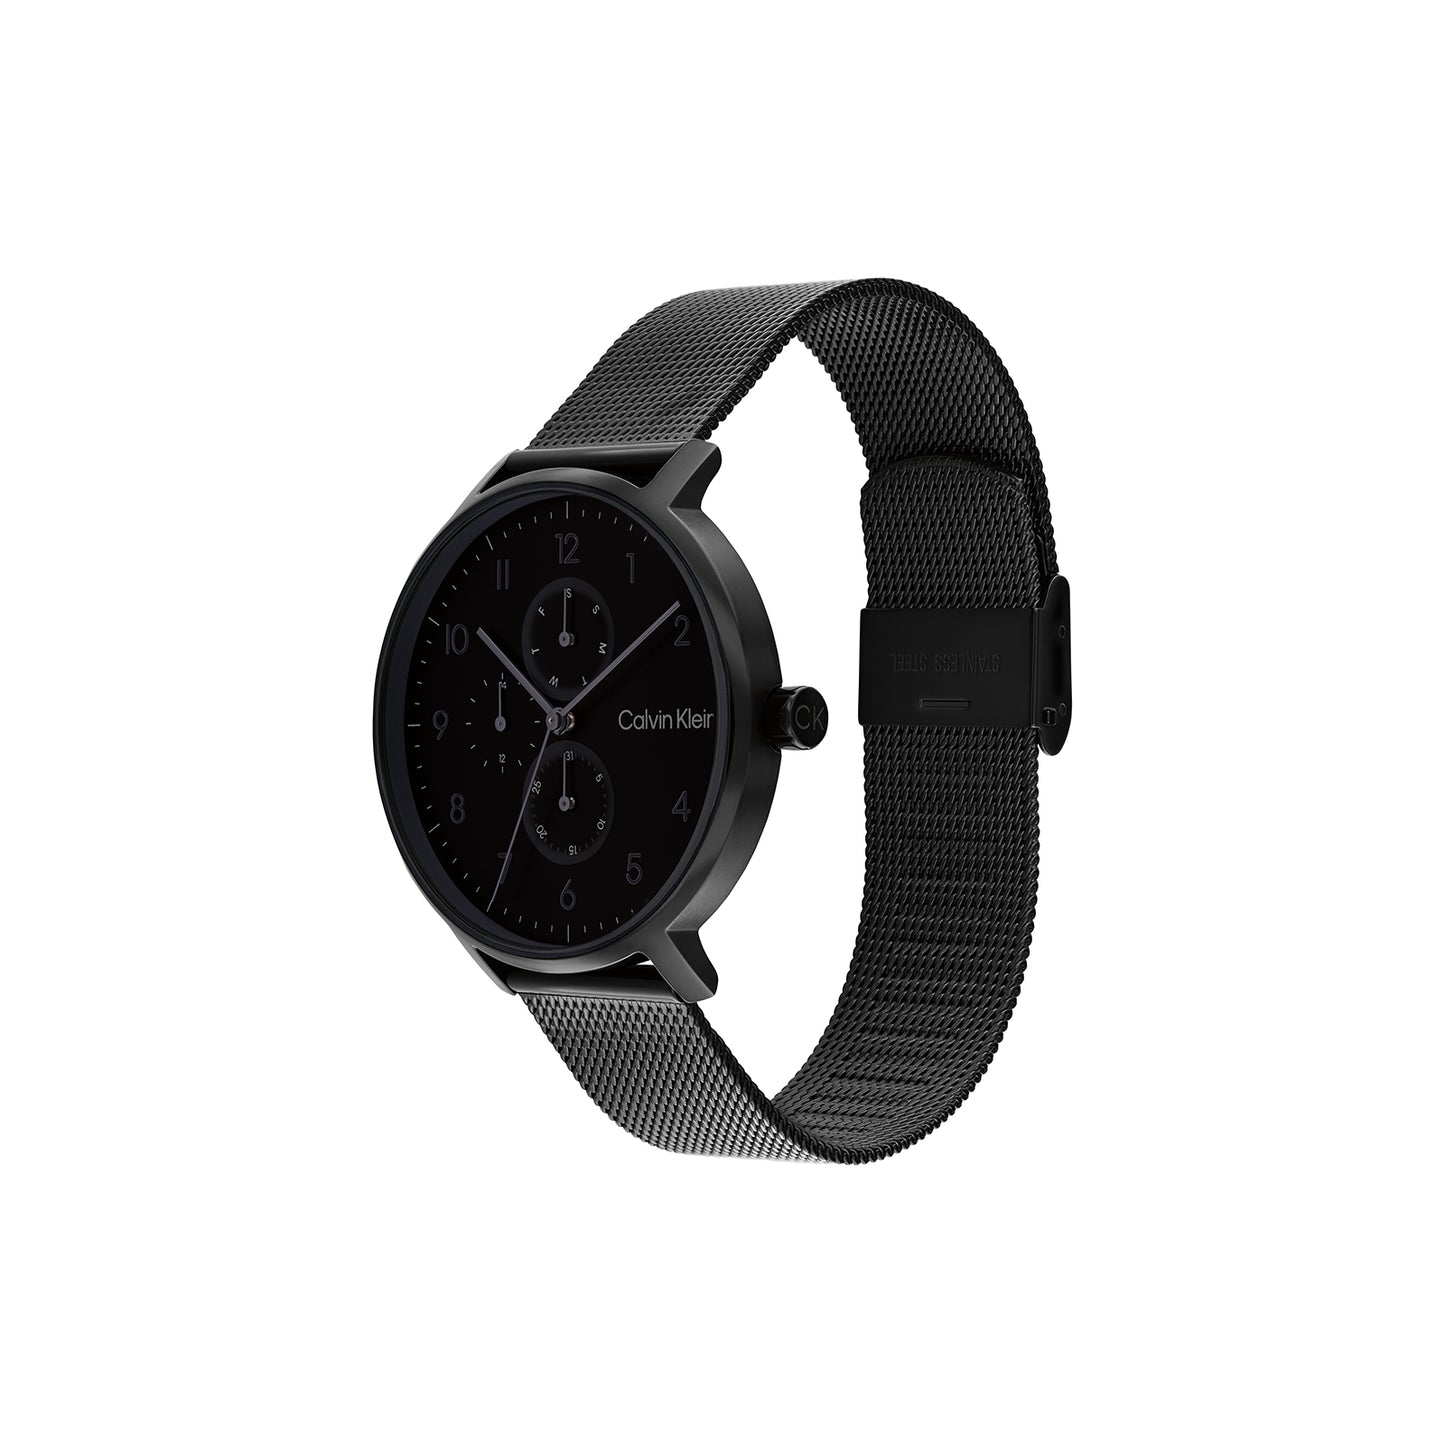 Clavin Klein 25200401 Unisex Ionic Black Plated Steel Mesh Watch